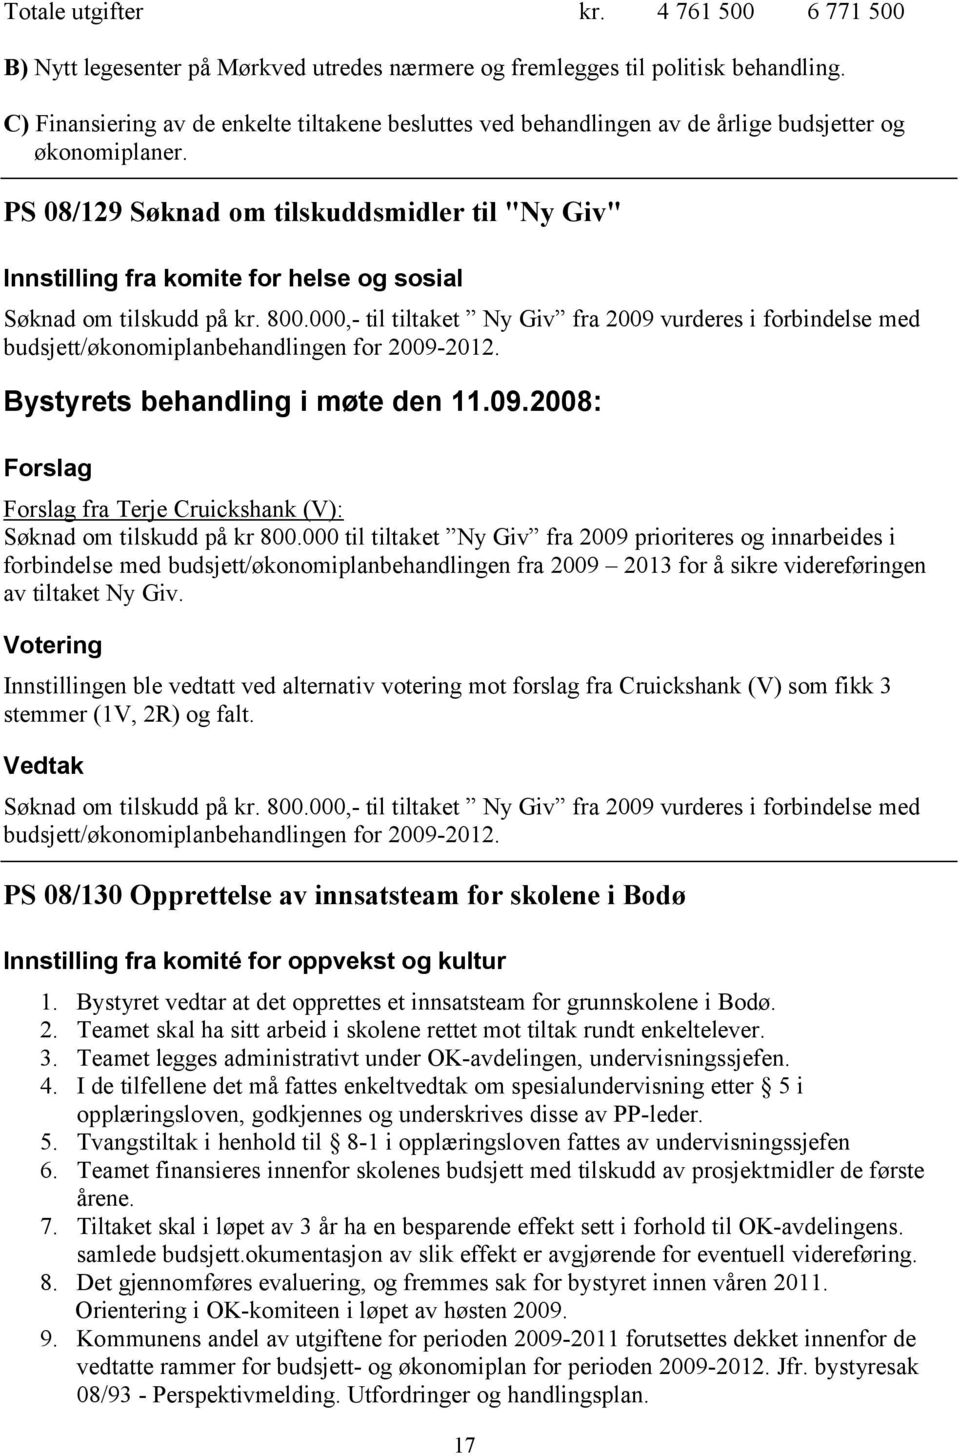 PS 08/129 Søknad om tilskuddsmidler til "Ny Giv" Innstilling fra komite for helse og sosial Søknad om tilskudd på kr. 800.